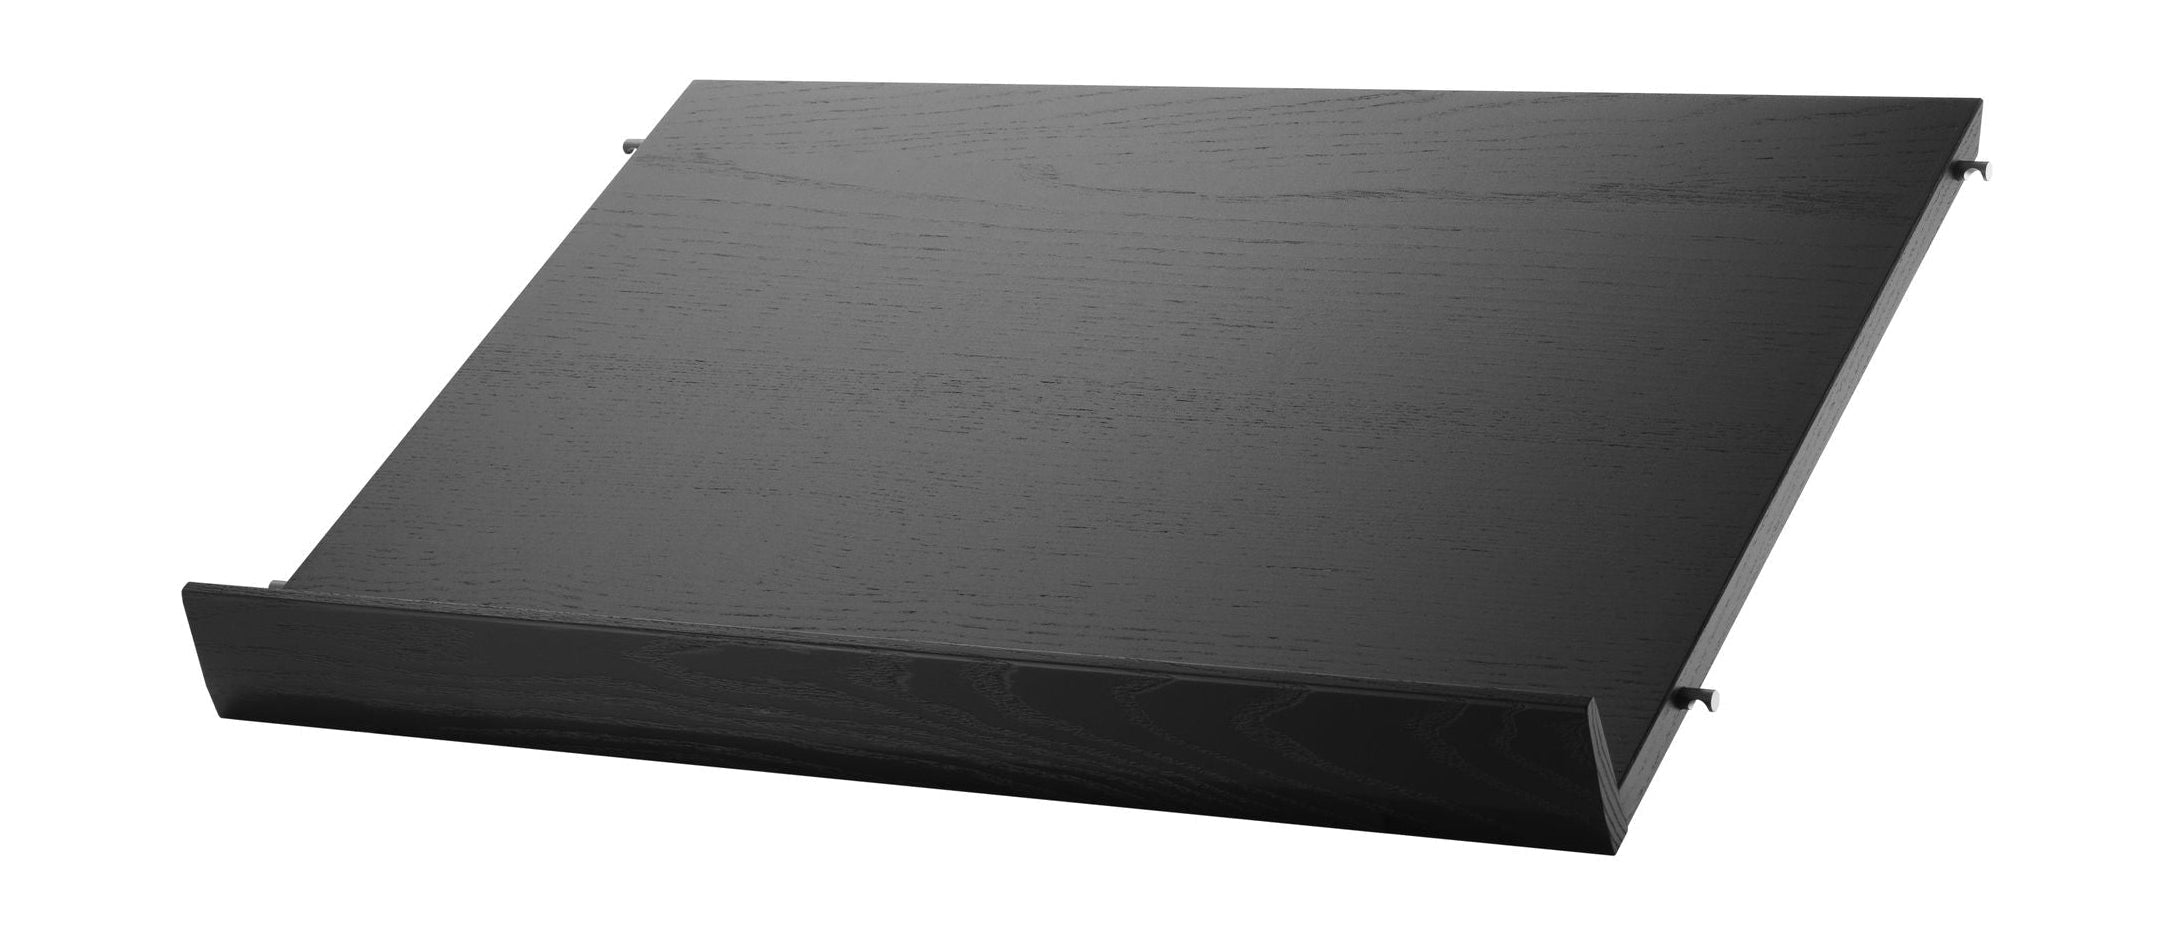 String Furniture String System Magazin-Tablett Holz schwarz gebeizt Esche, 30x58 Cm